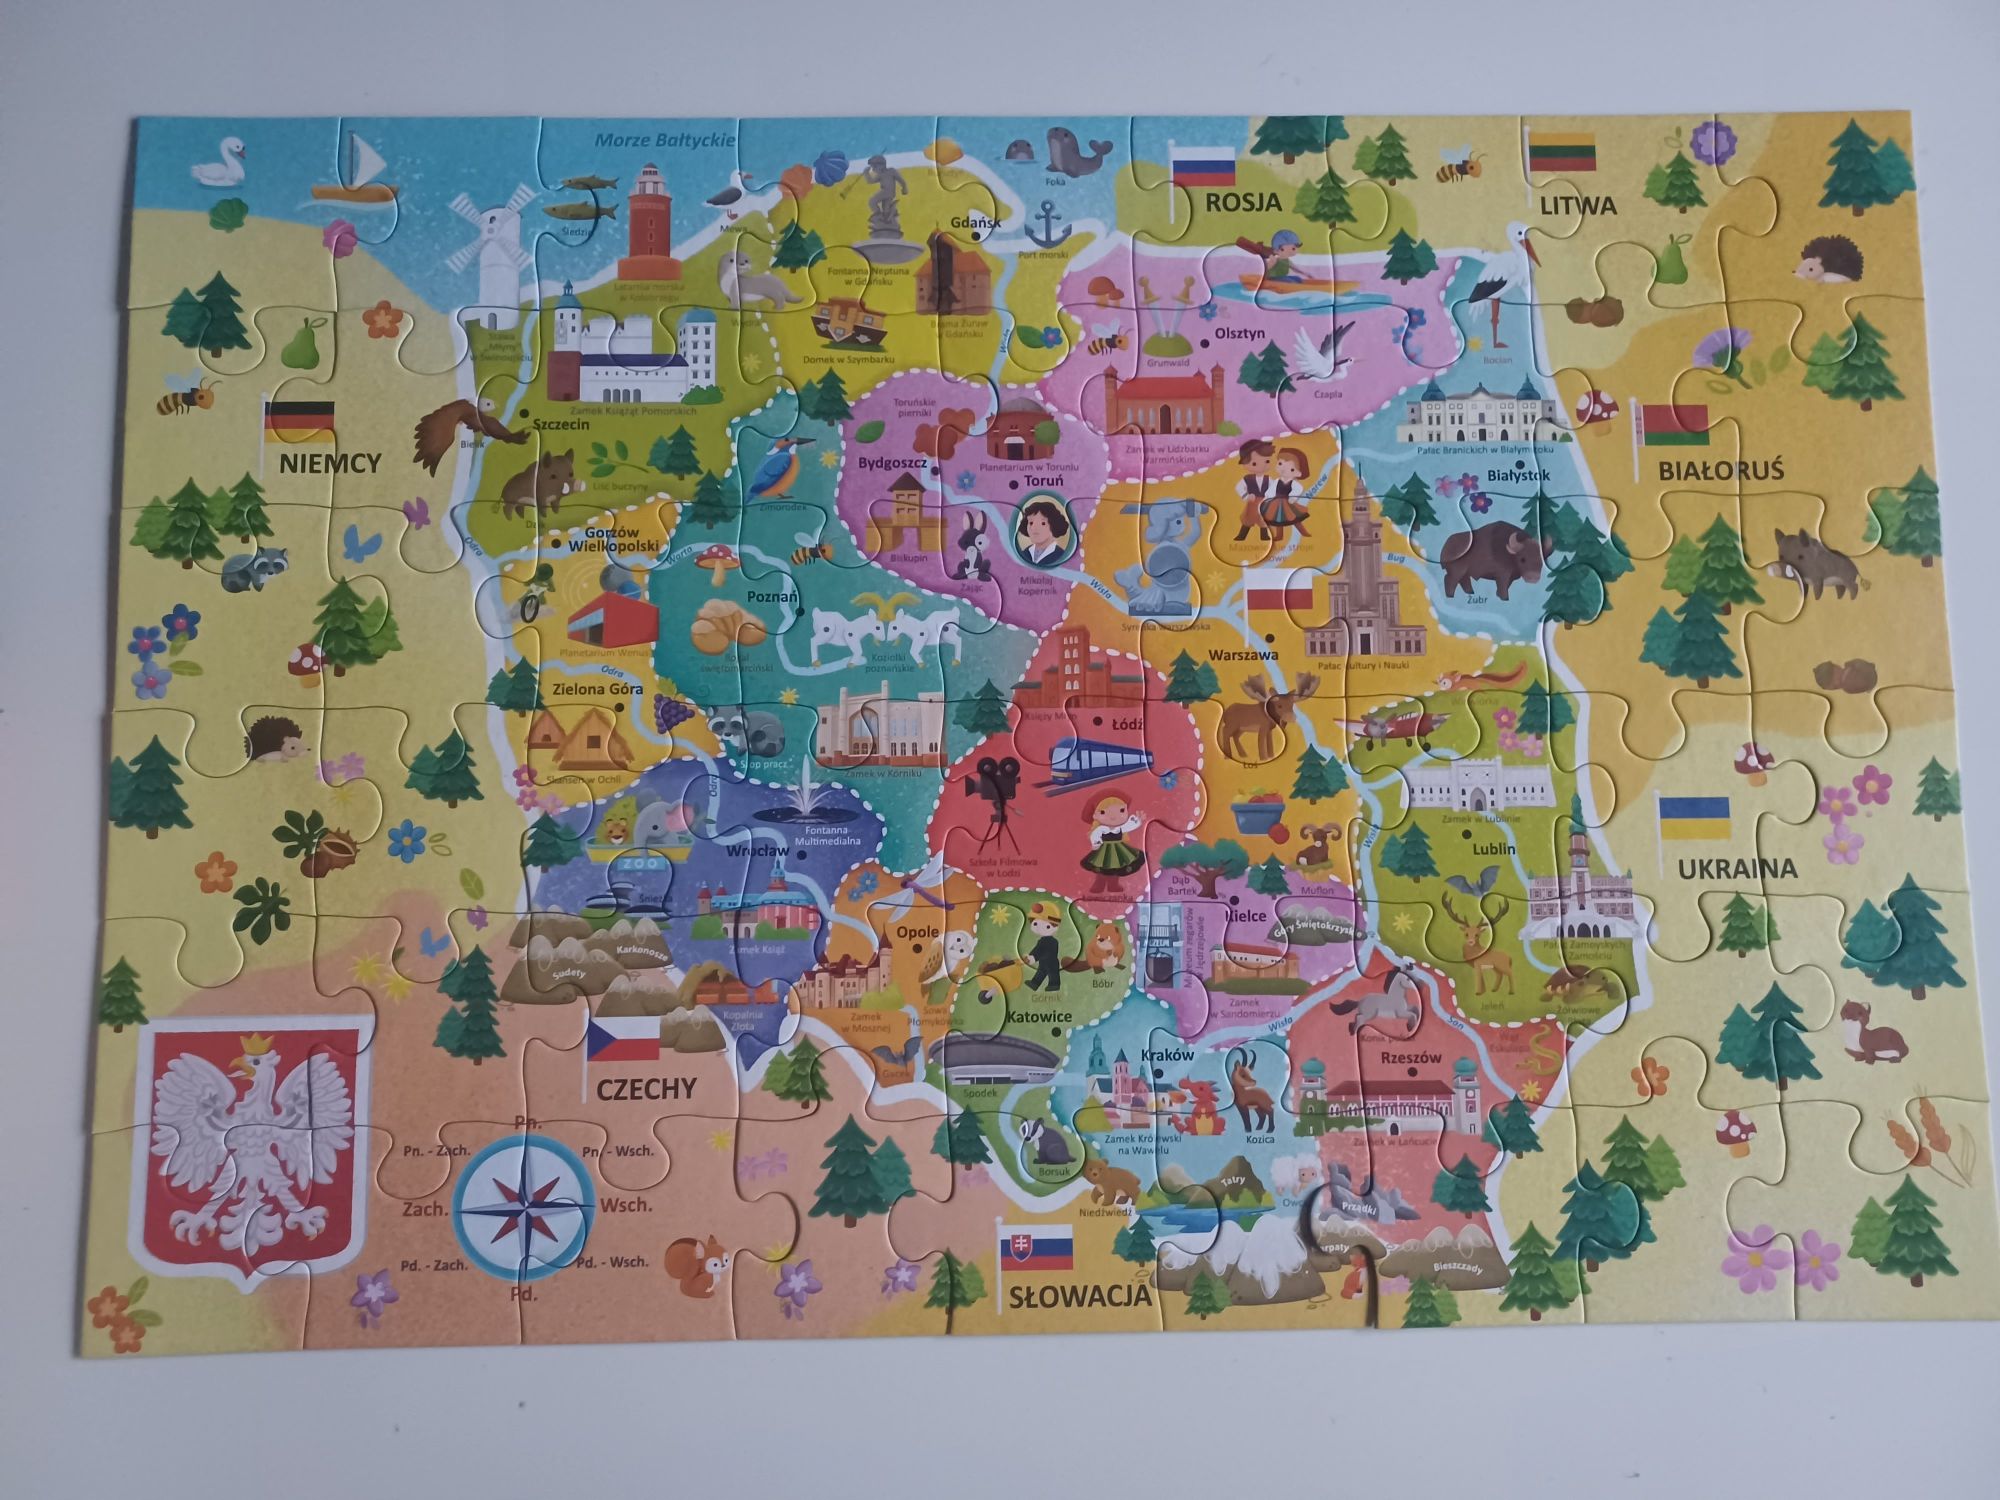 Edukacyjne Puzzle Mapa Polski Trefl